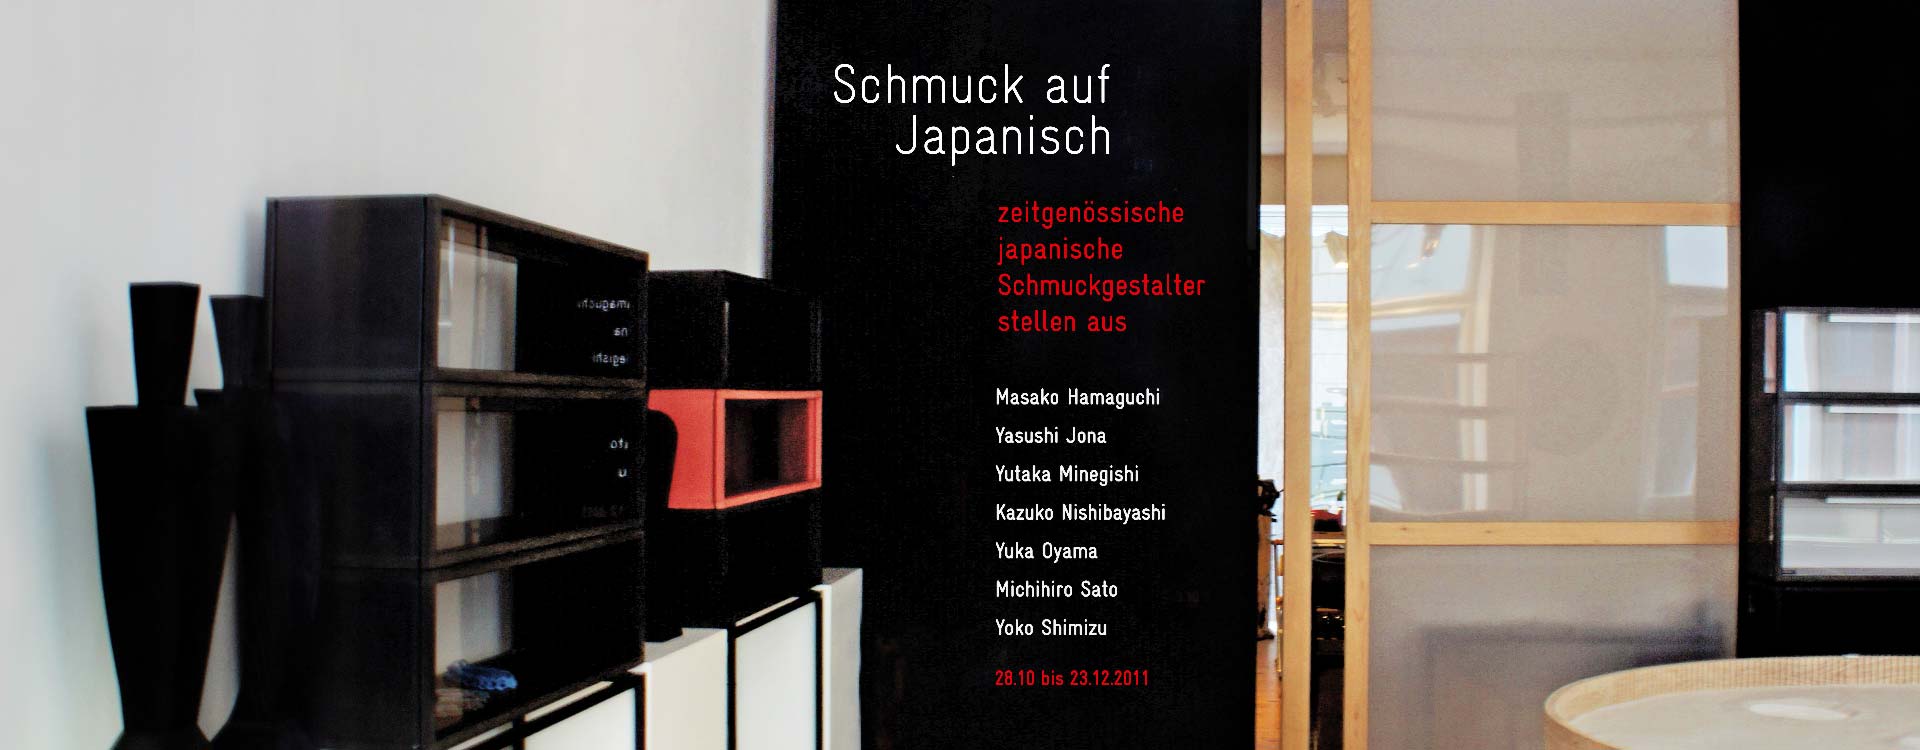 Folienschnitt an der Wand zur Ausstellung „Schmuck auf Japanisch“ in der Galerie Michaela Binder, Berlin; Design: Kattrin Richter | Büro für Grafikdesign